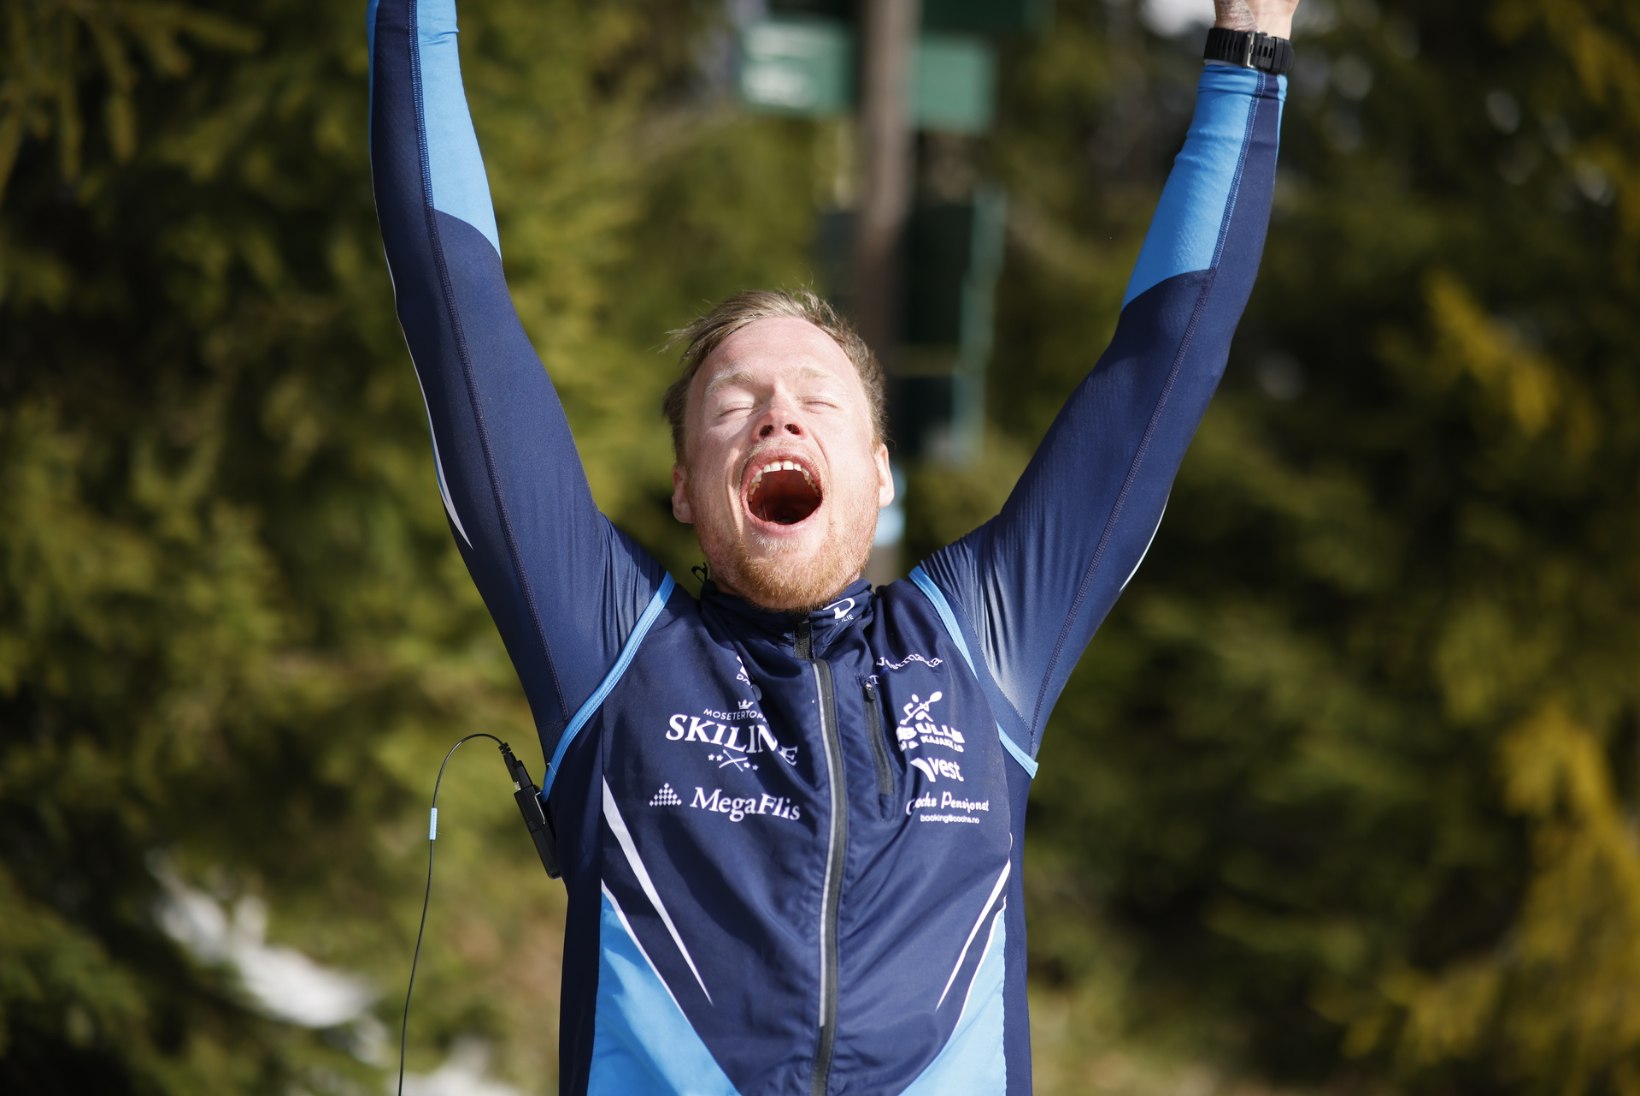 Eesti suusakoondislane aitas norralase ulmelise maailmarekordini